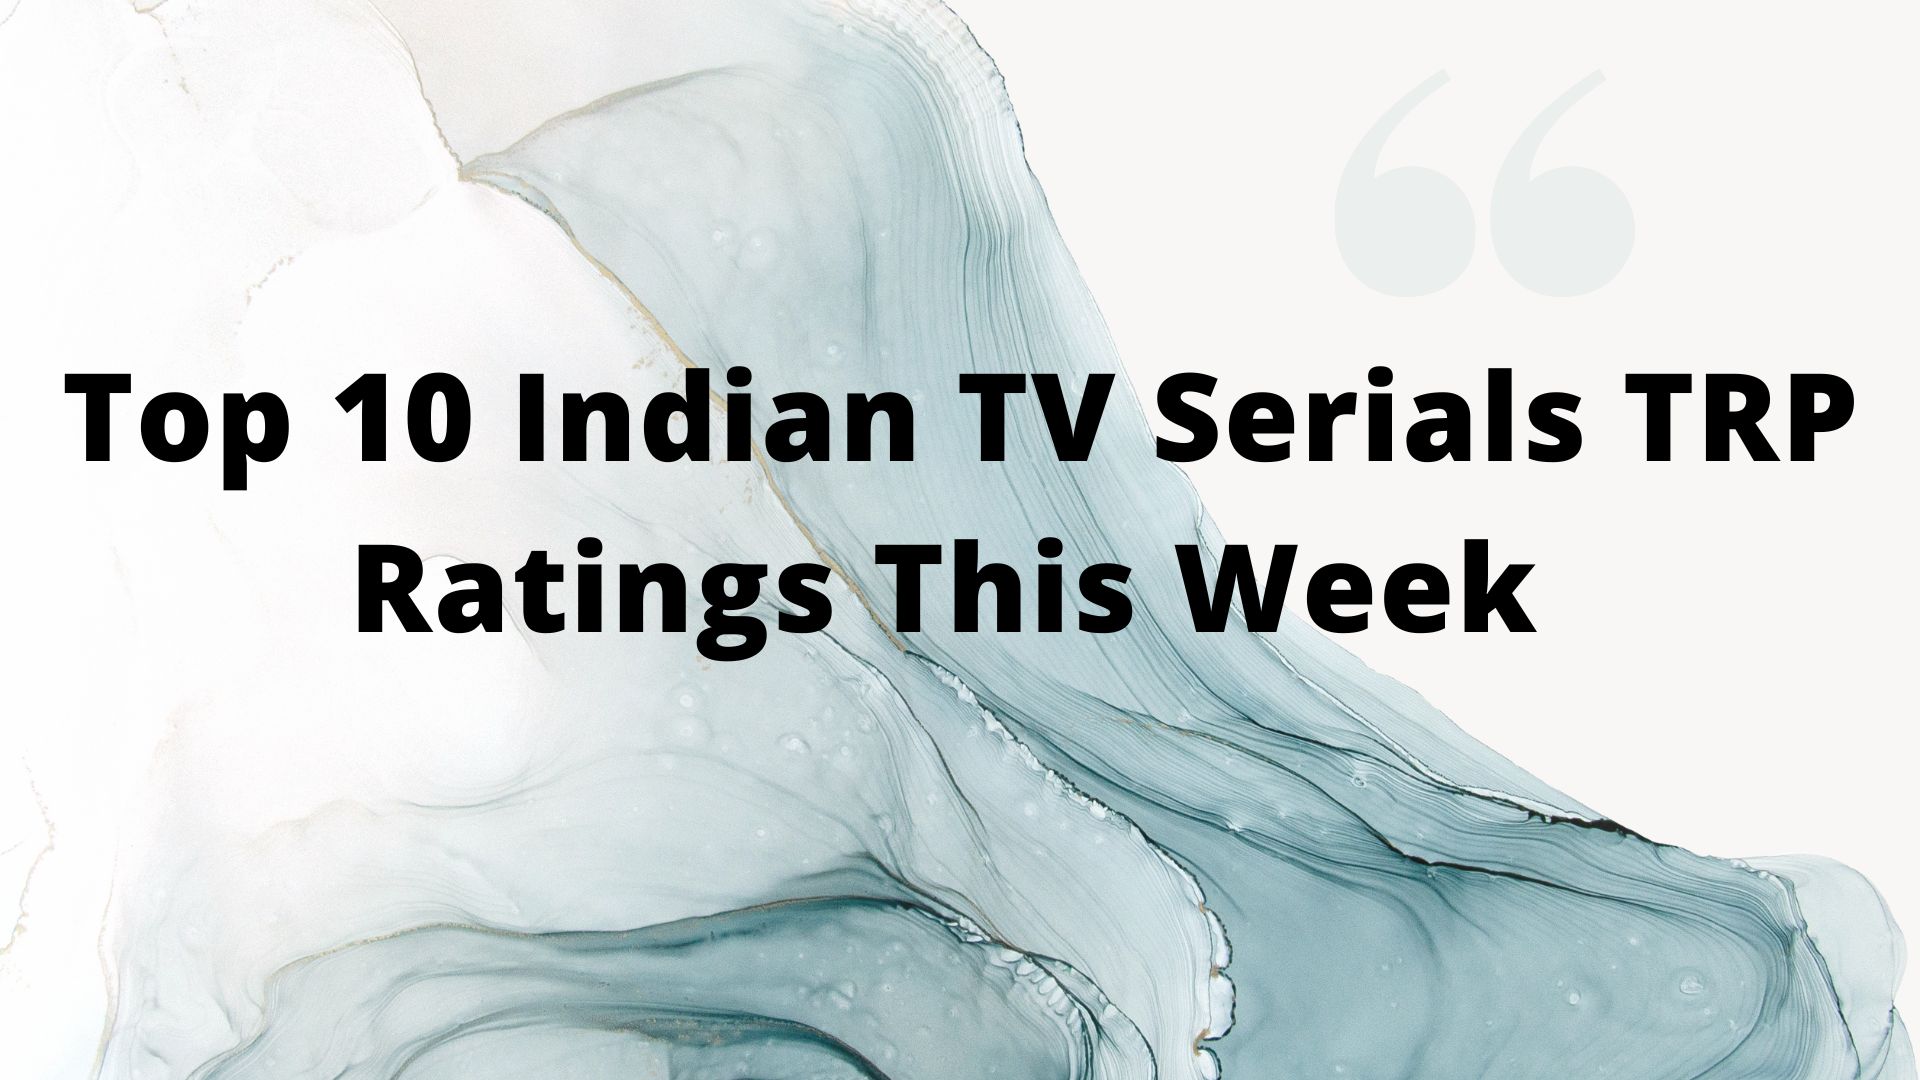 Top 10 Indian TV Serials TRP Ratings This Week 